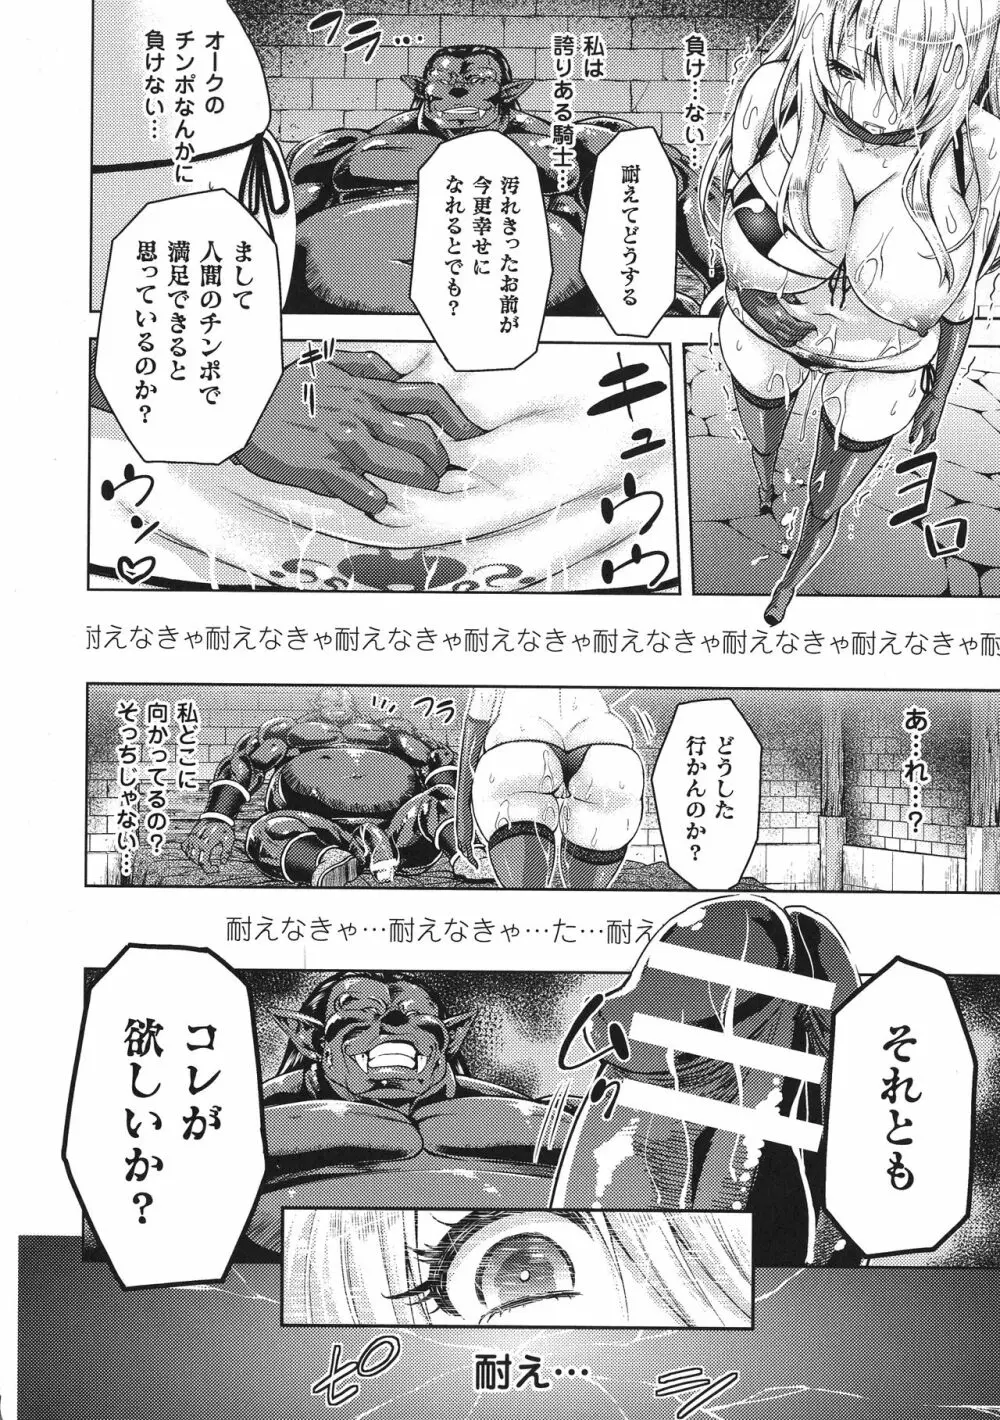 敗北乙女エクスタシー SP1 16ページ